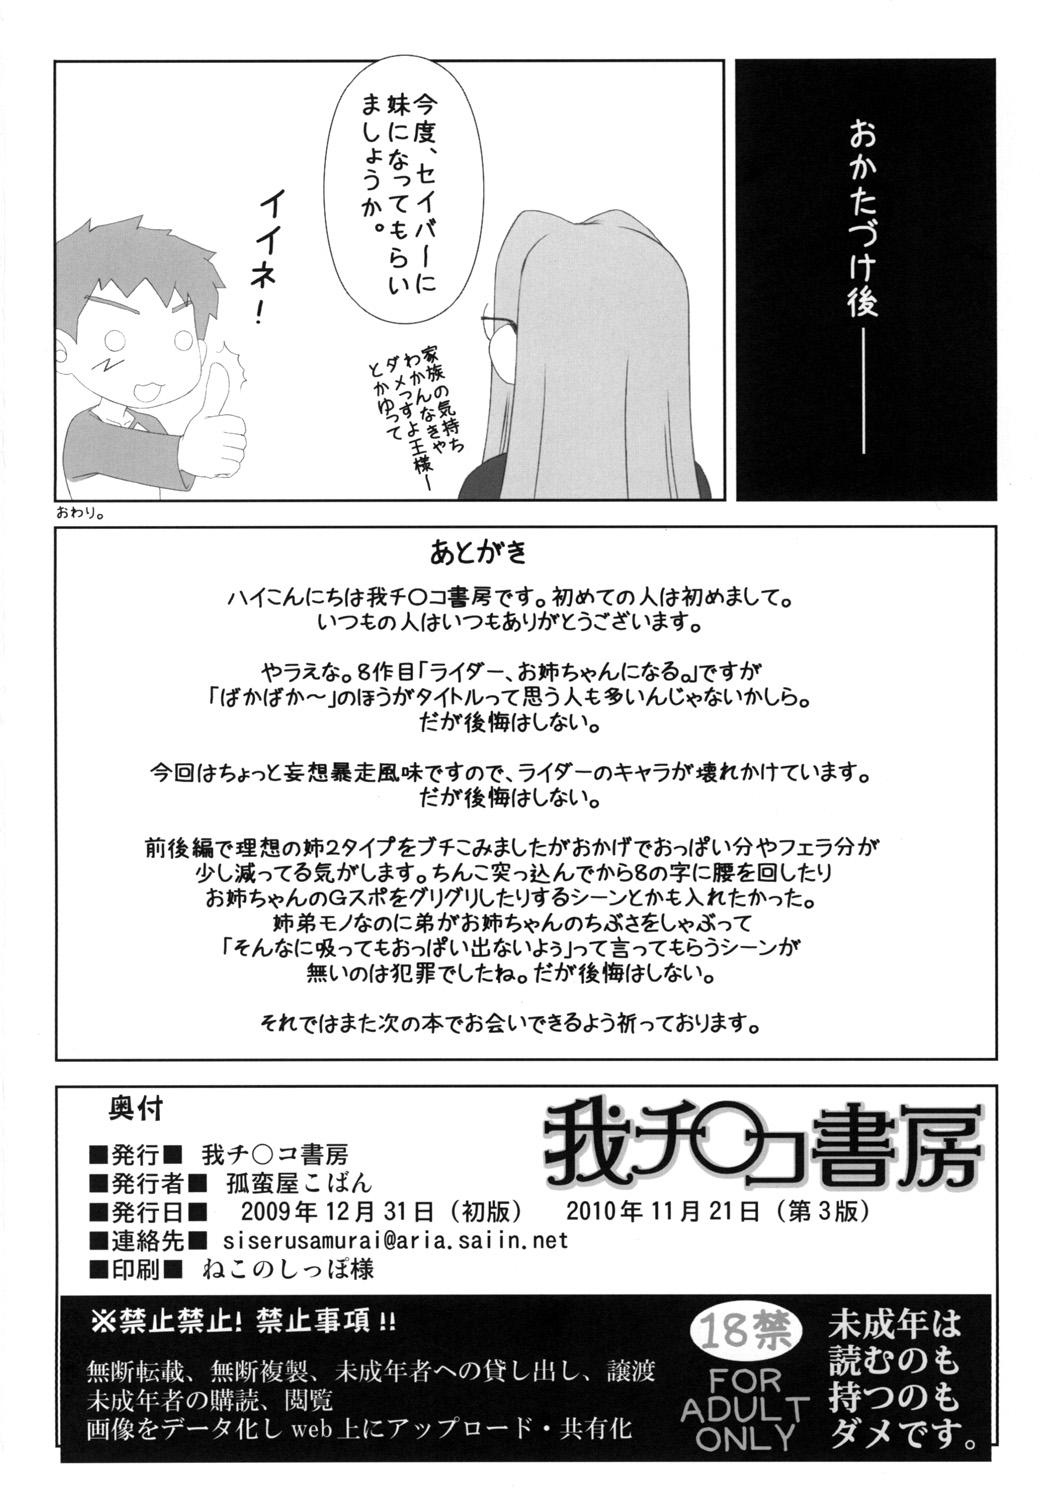 Spycam Yappari Rider wa Eroi na 8 "Rider, Oneechan ni naru" - Fate stay night Gag - Page 33